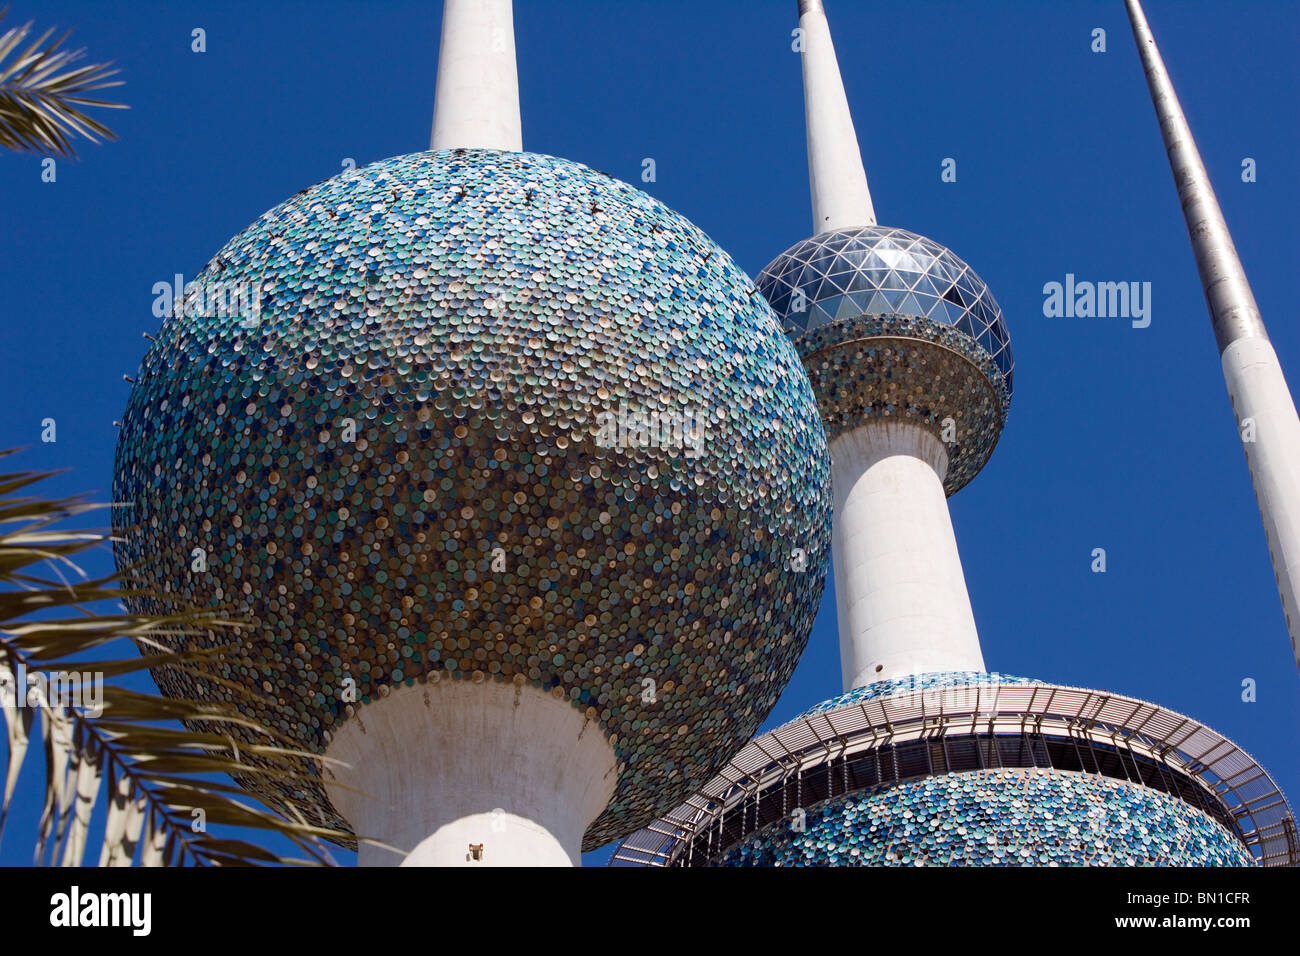 Kuwait Towers, établissement emblématique, l'État du Koweït, au Moyen-Orient Banque D'Images